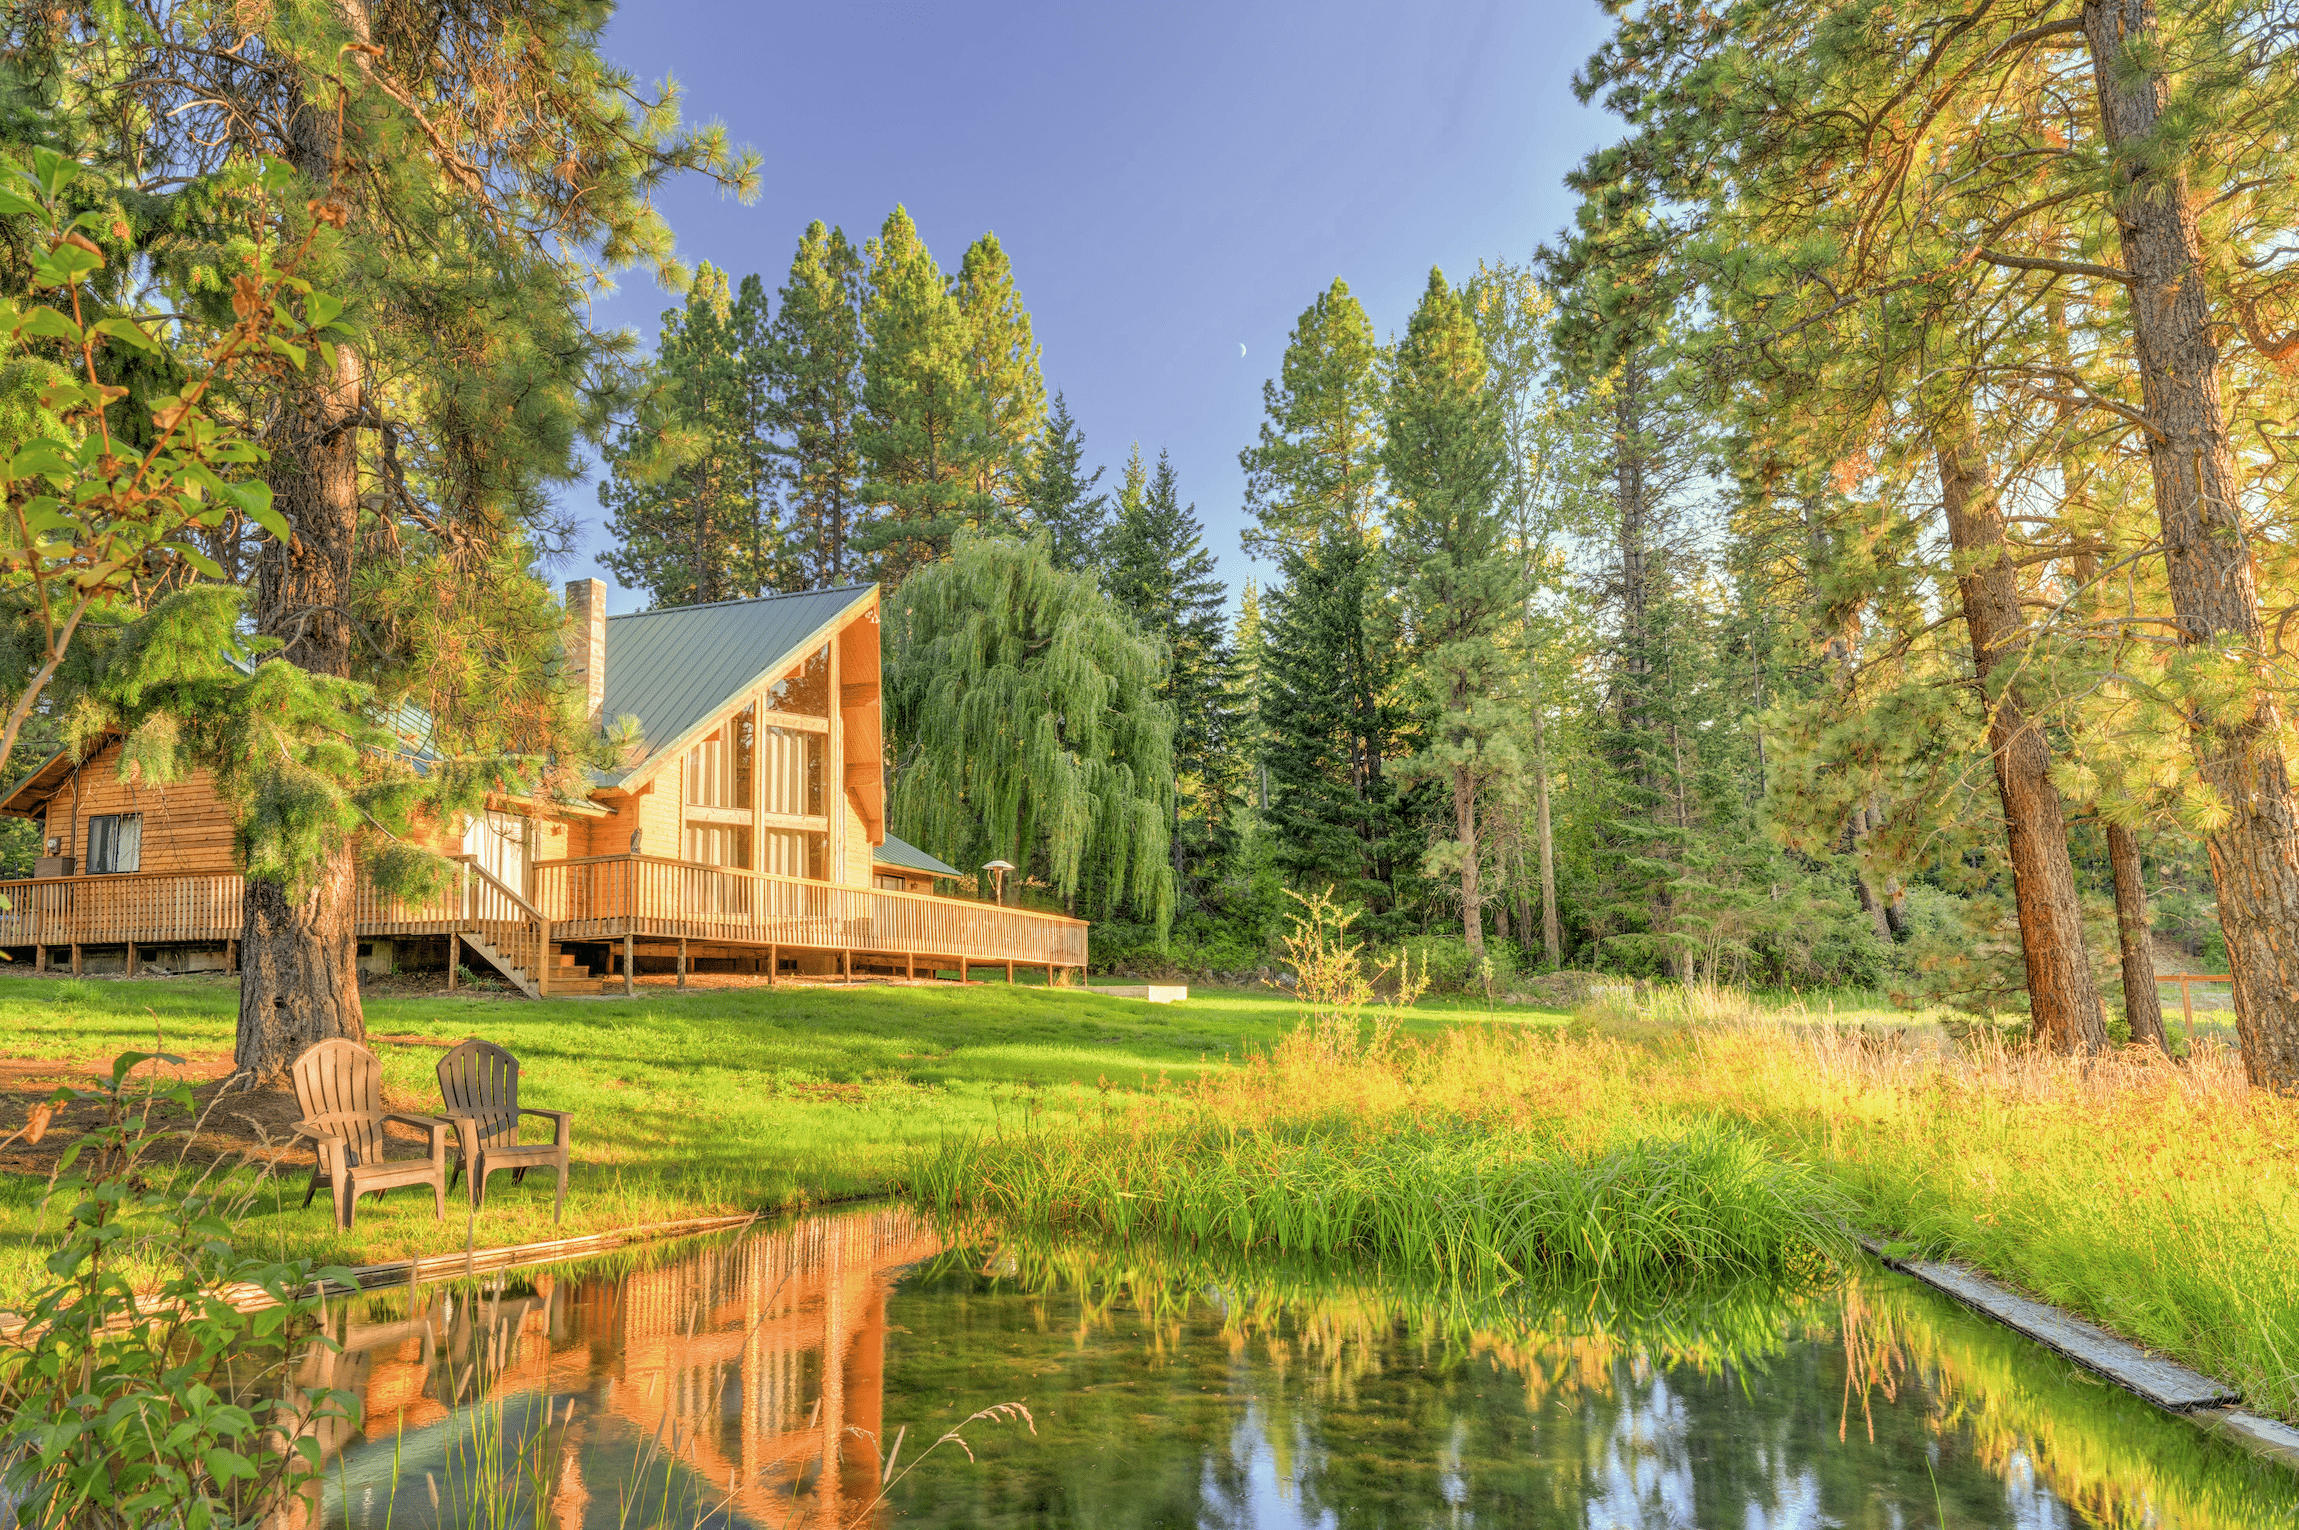 Holzblockhaus mit grünem Metalldach auf großem Grundstück in naturbelassender Landschaft.